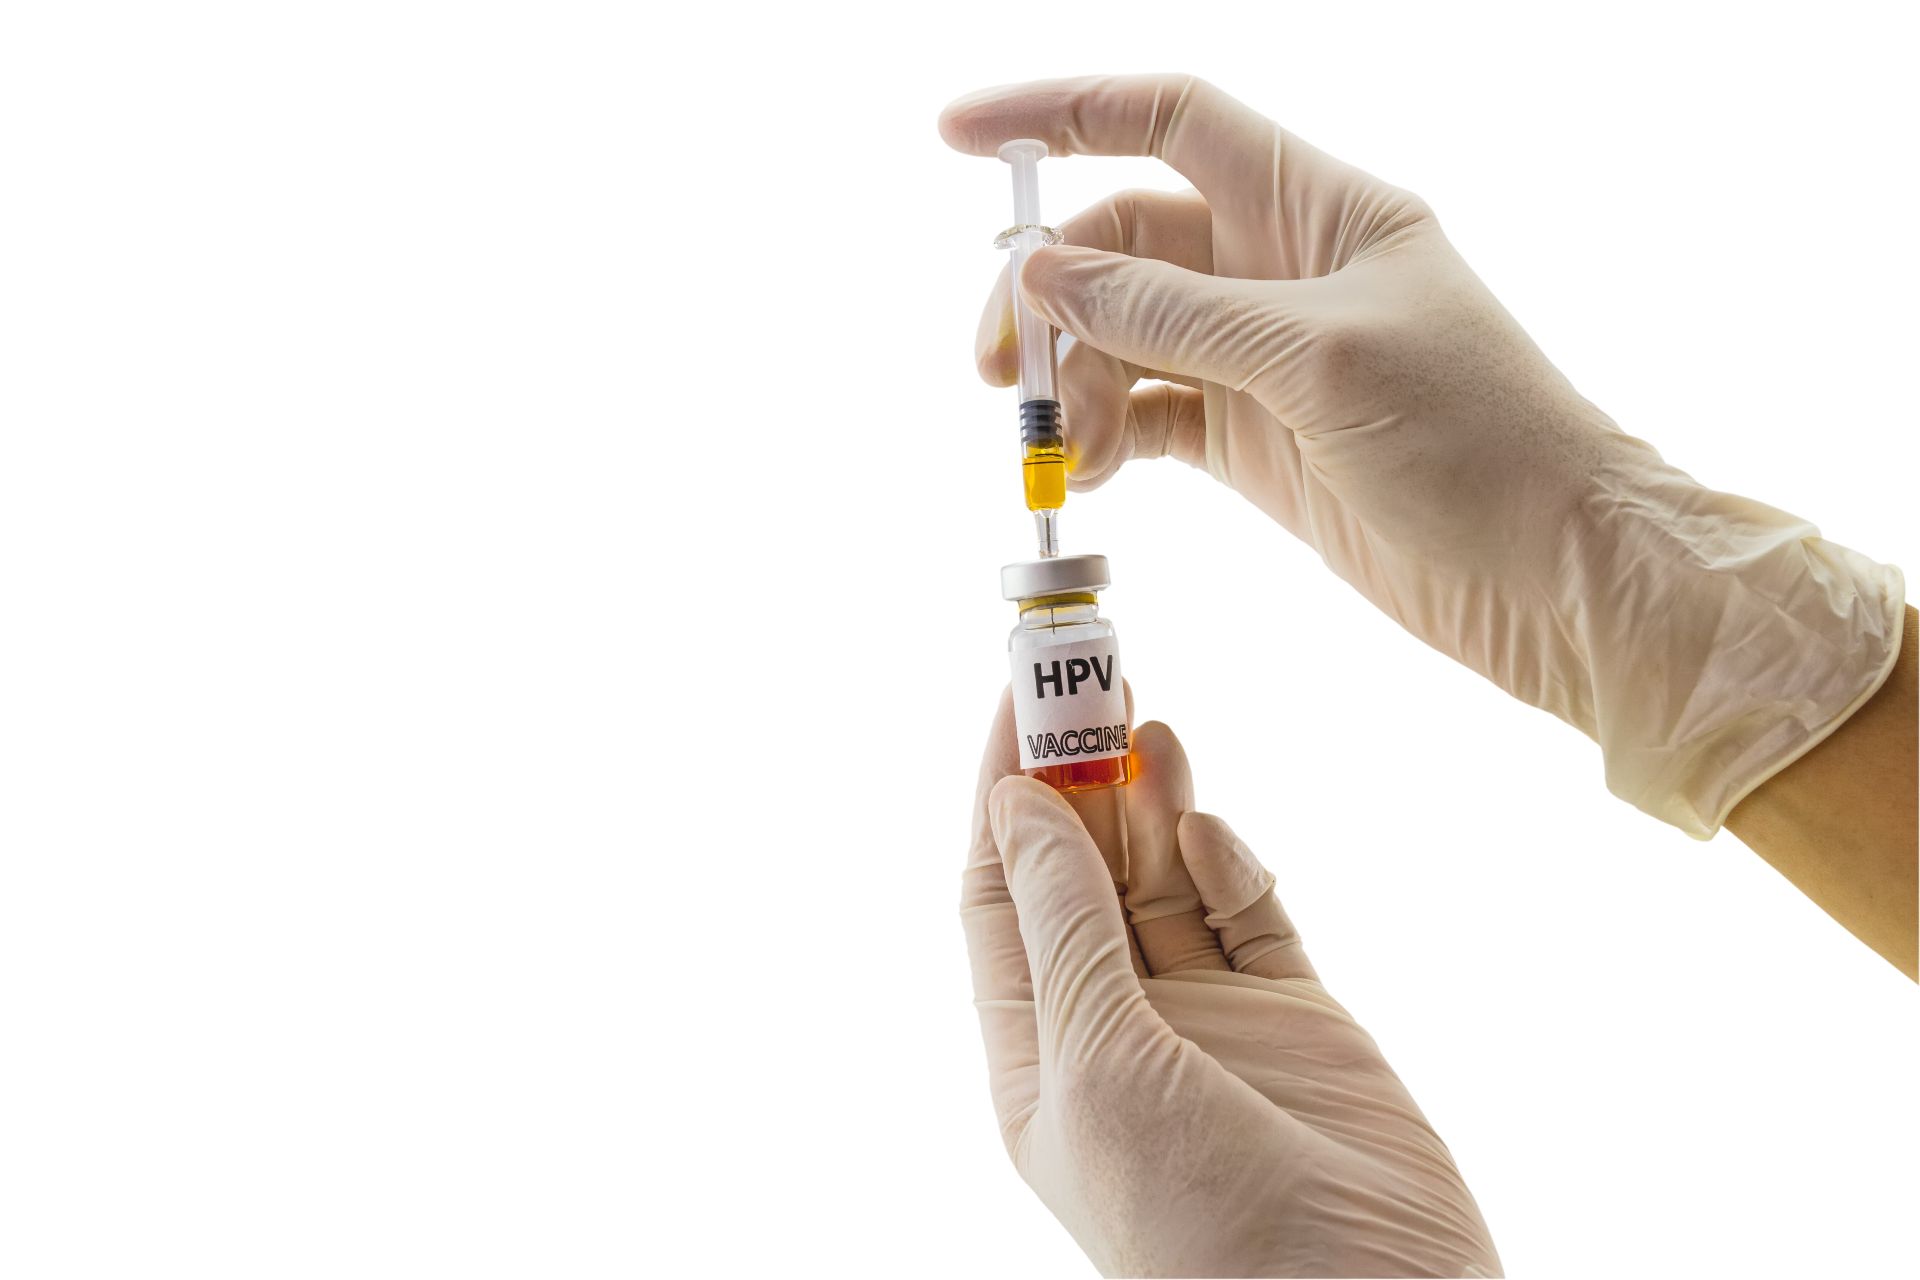 Vaccinarea anti-HPV, o lecţie din care trebuie să învăţăm